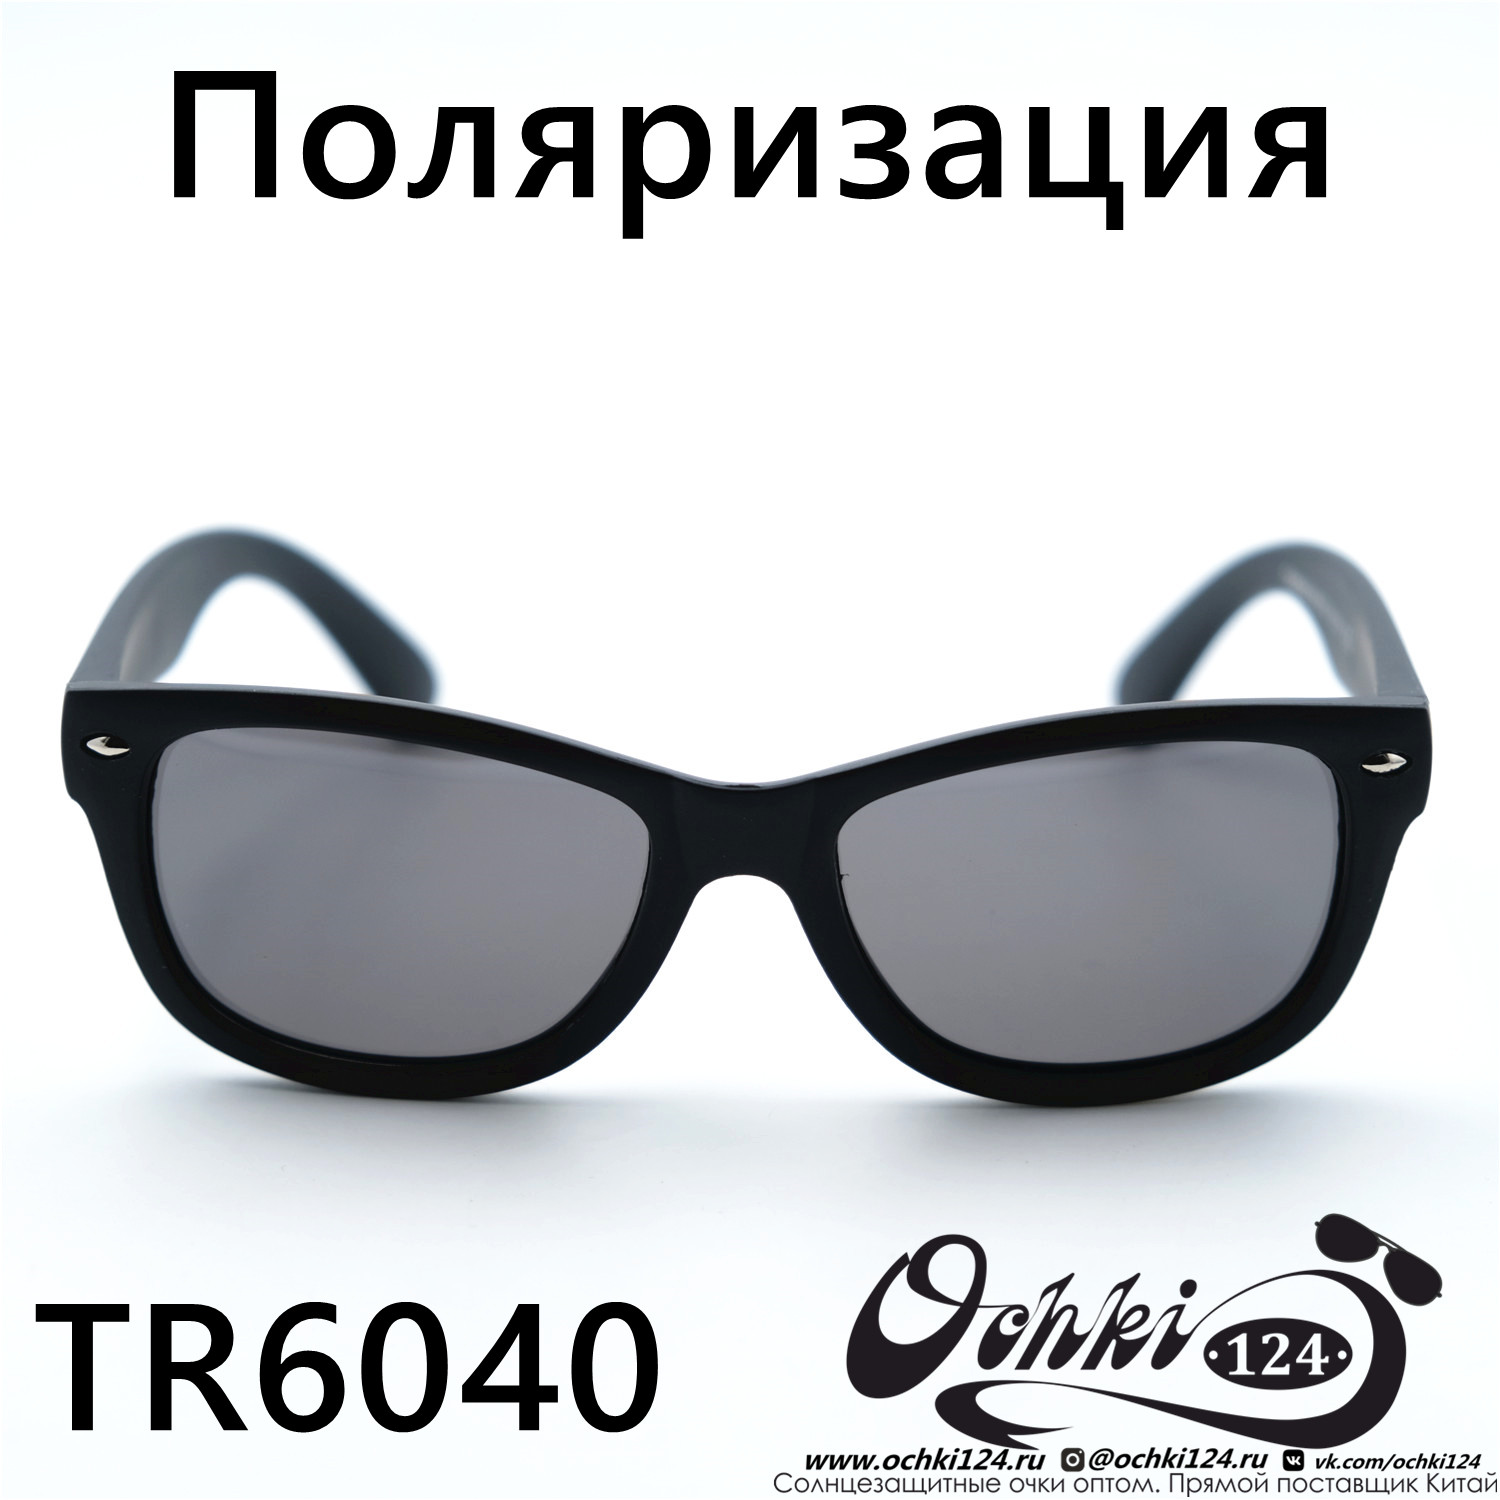  Солнцезащитные очки картинка 2023 Детские Поляризованные Стандартные  TR6040-C1 